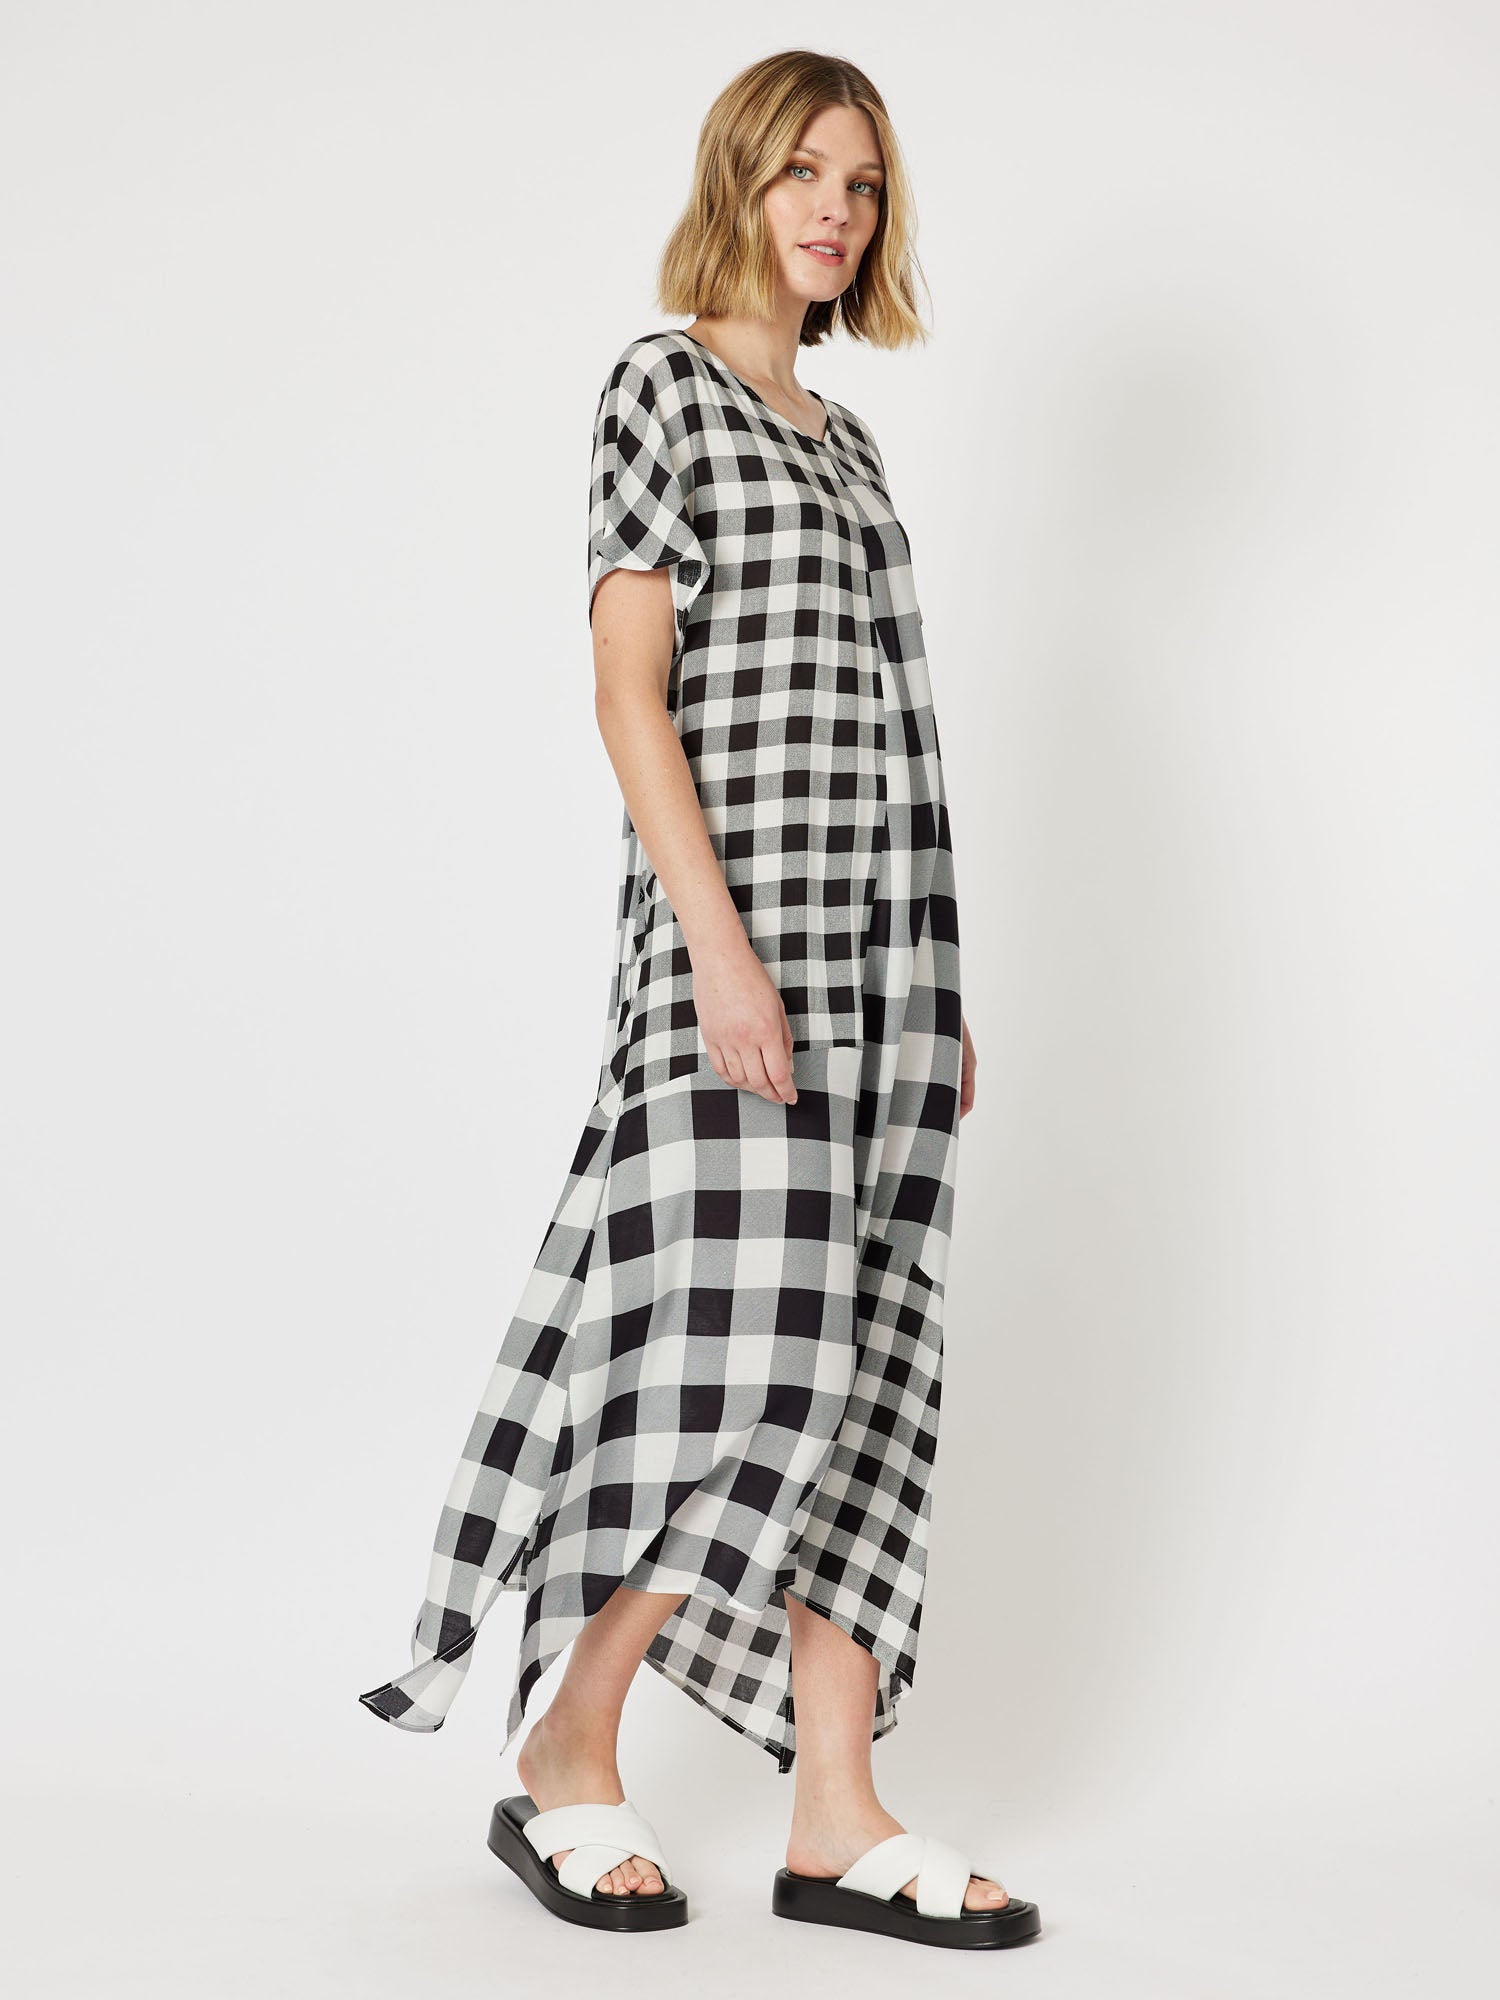 Medley Spliced Check Short Sleeve Long Dress - Black/White